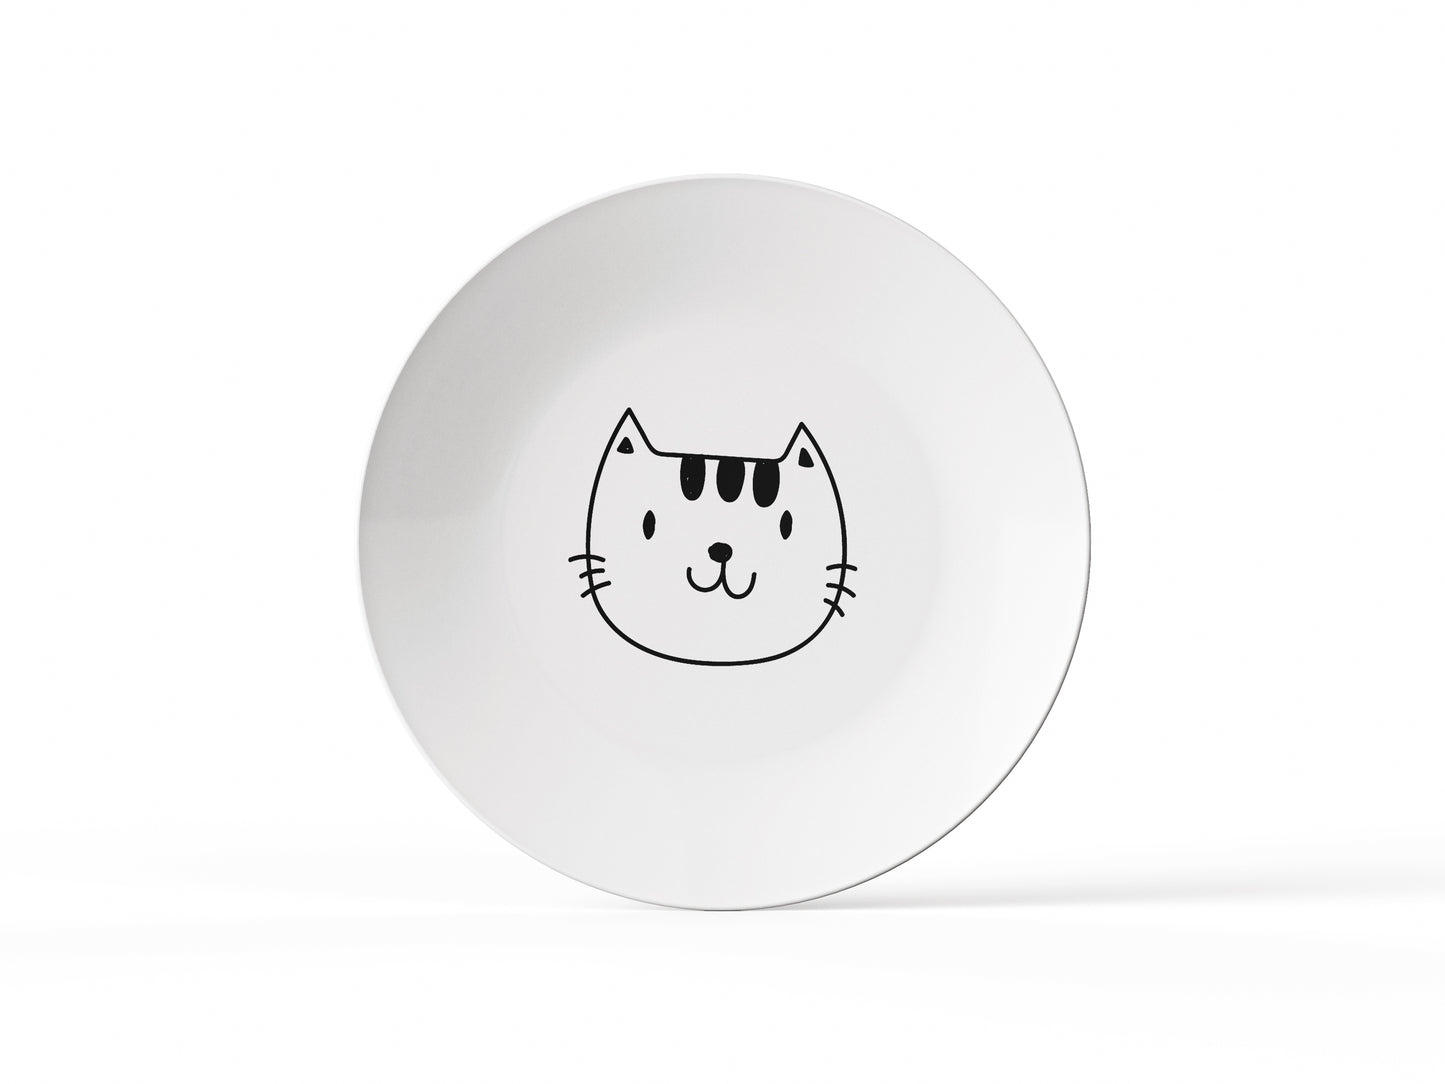 El Yapımı Kedi Yüzlü Yemek Tabağı, Porselen Sevimli Kedi Yemek Tabağı (1 adet)